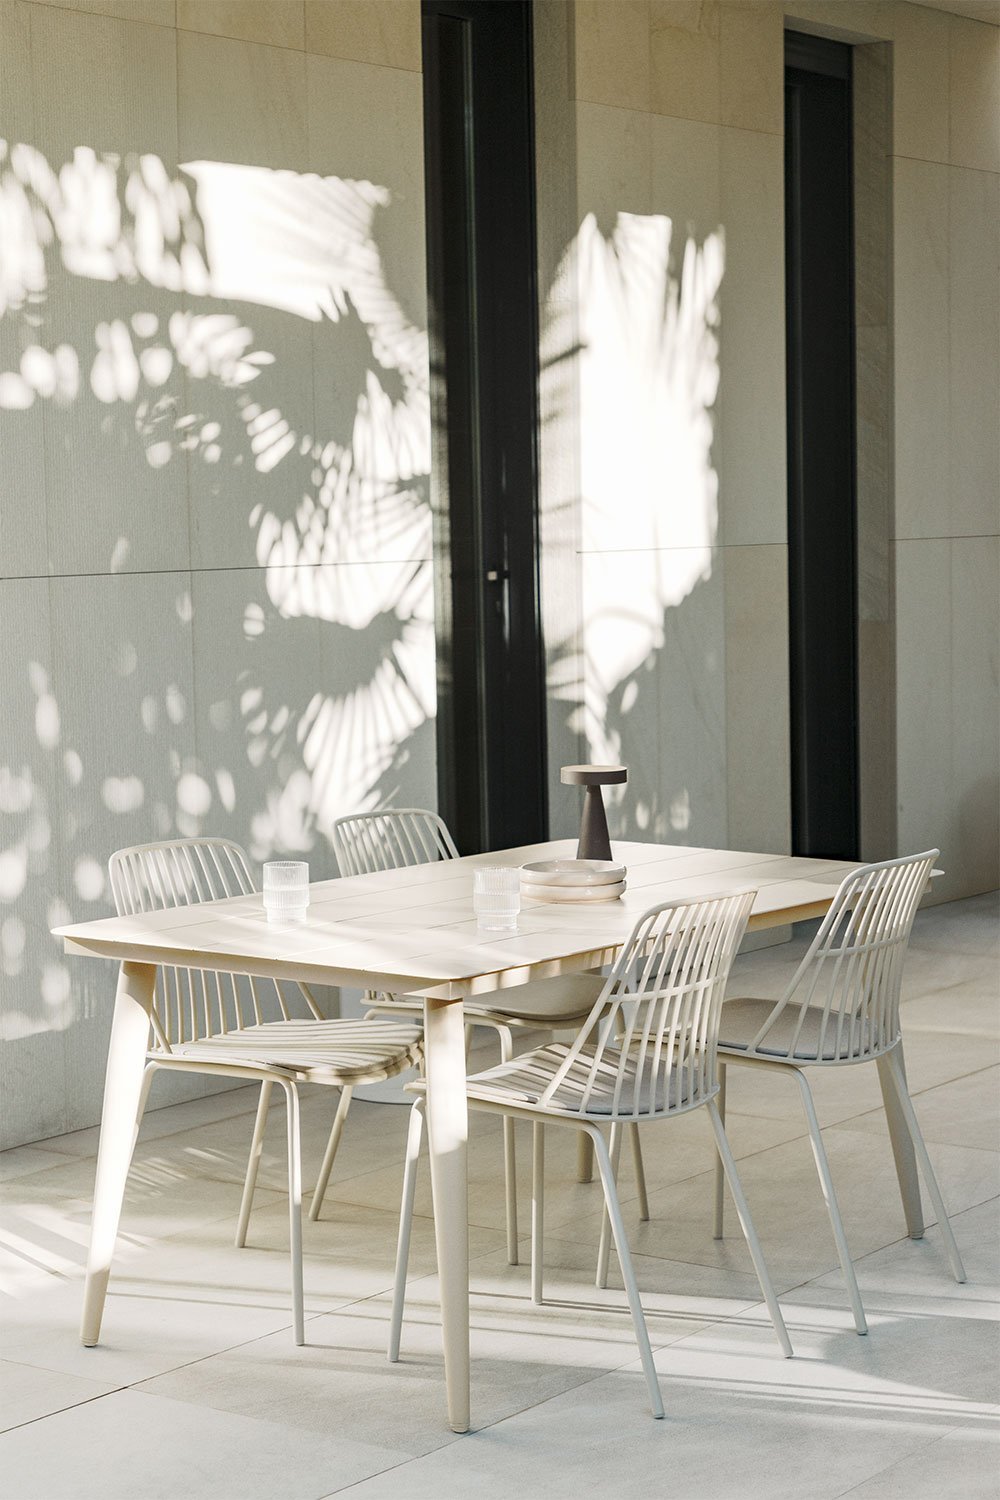 Table de jardin rectangulaire en aluminium (160x90 cm) Kevan, image de la galerie 1